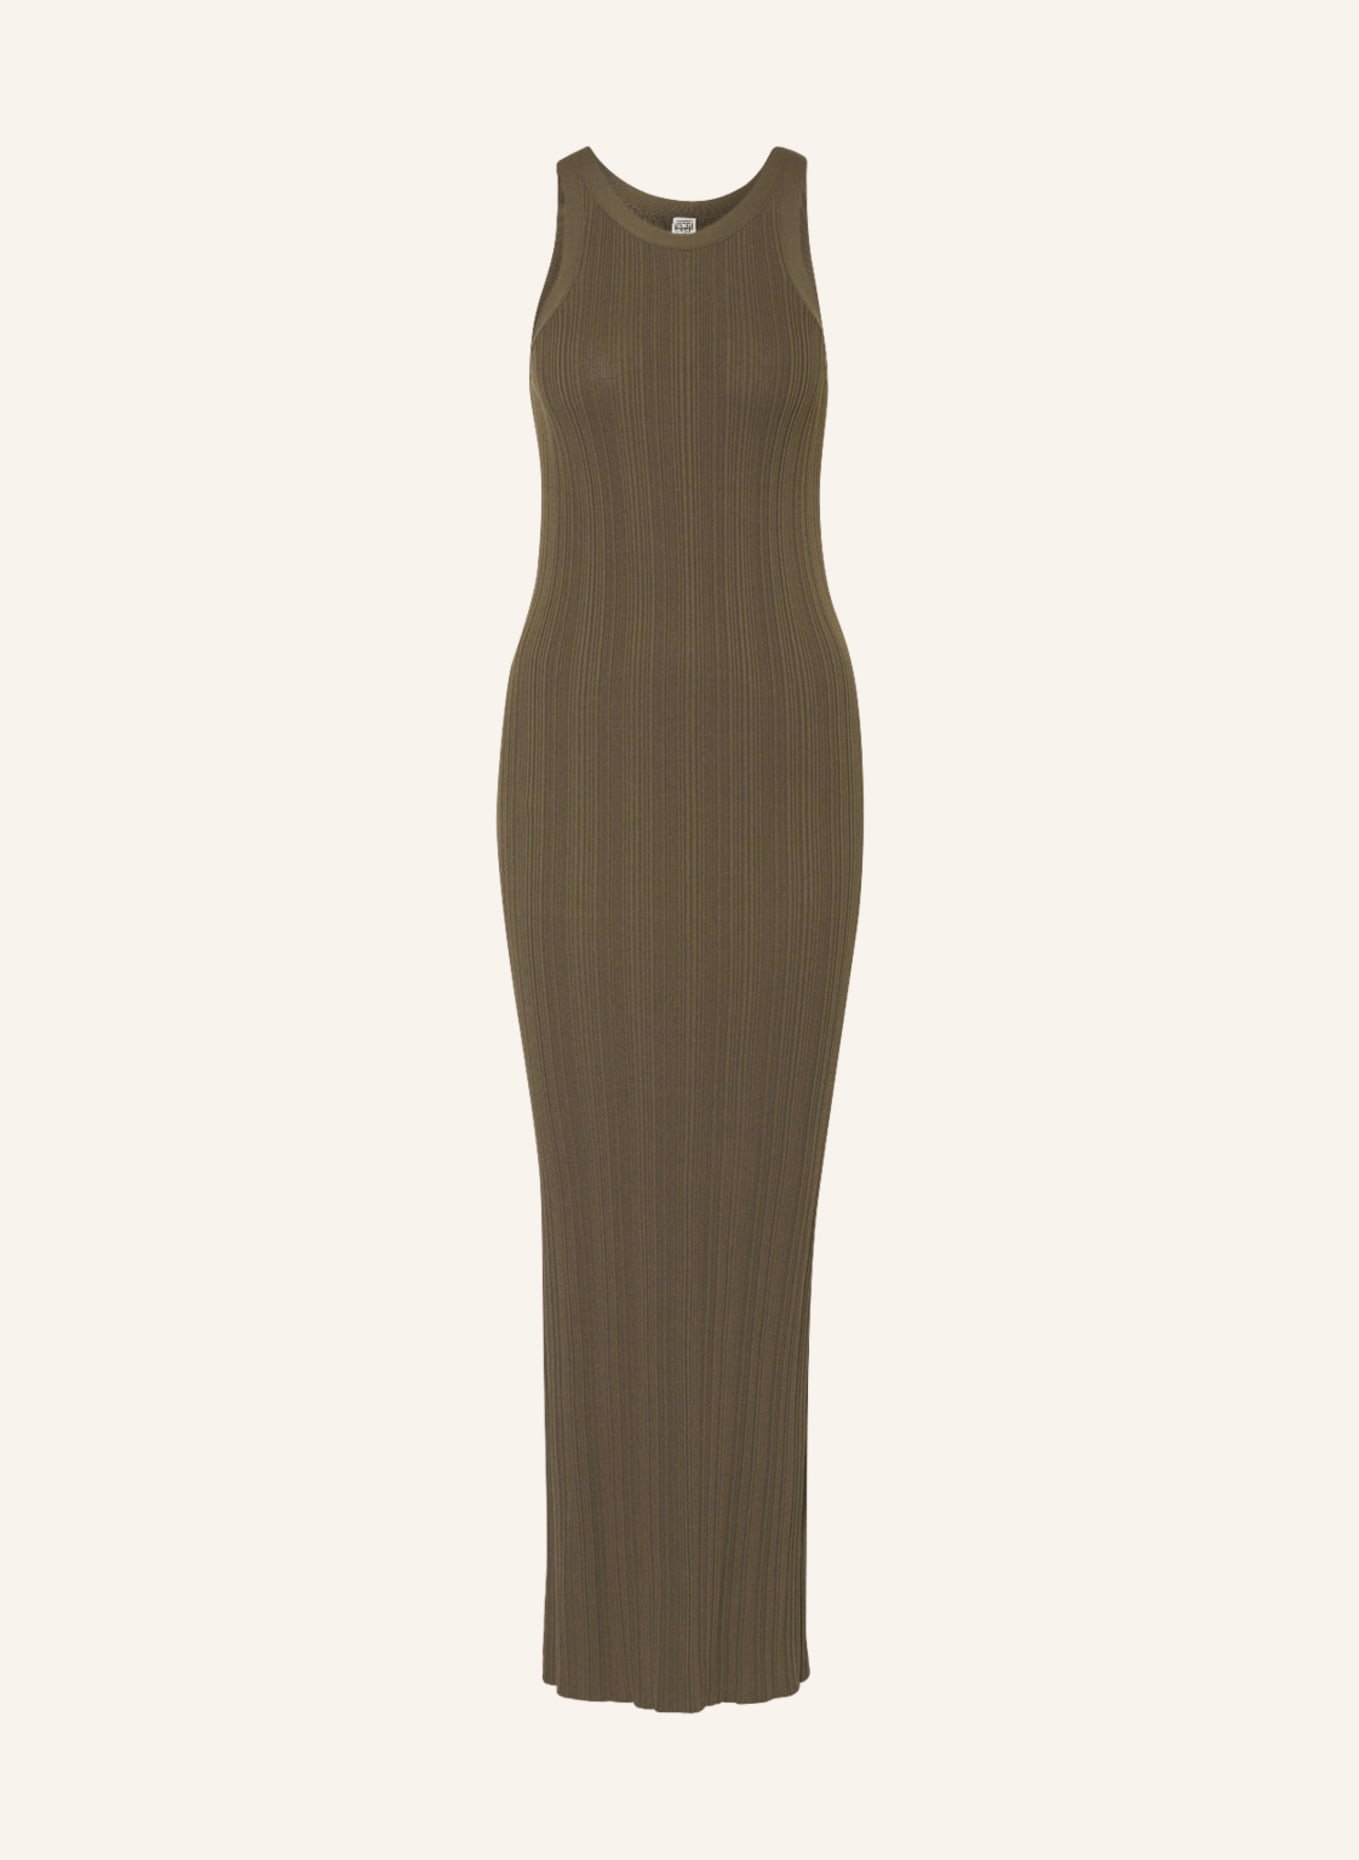 TOTEME Dress, Color: OLIVE (Image 1)